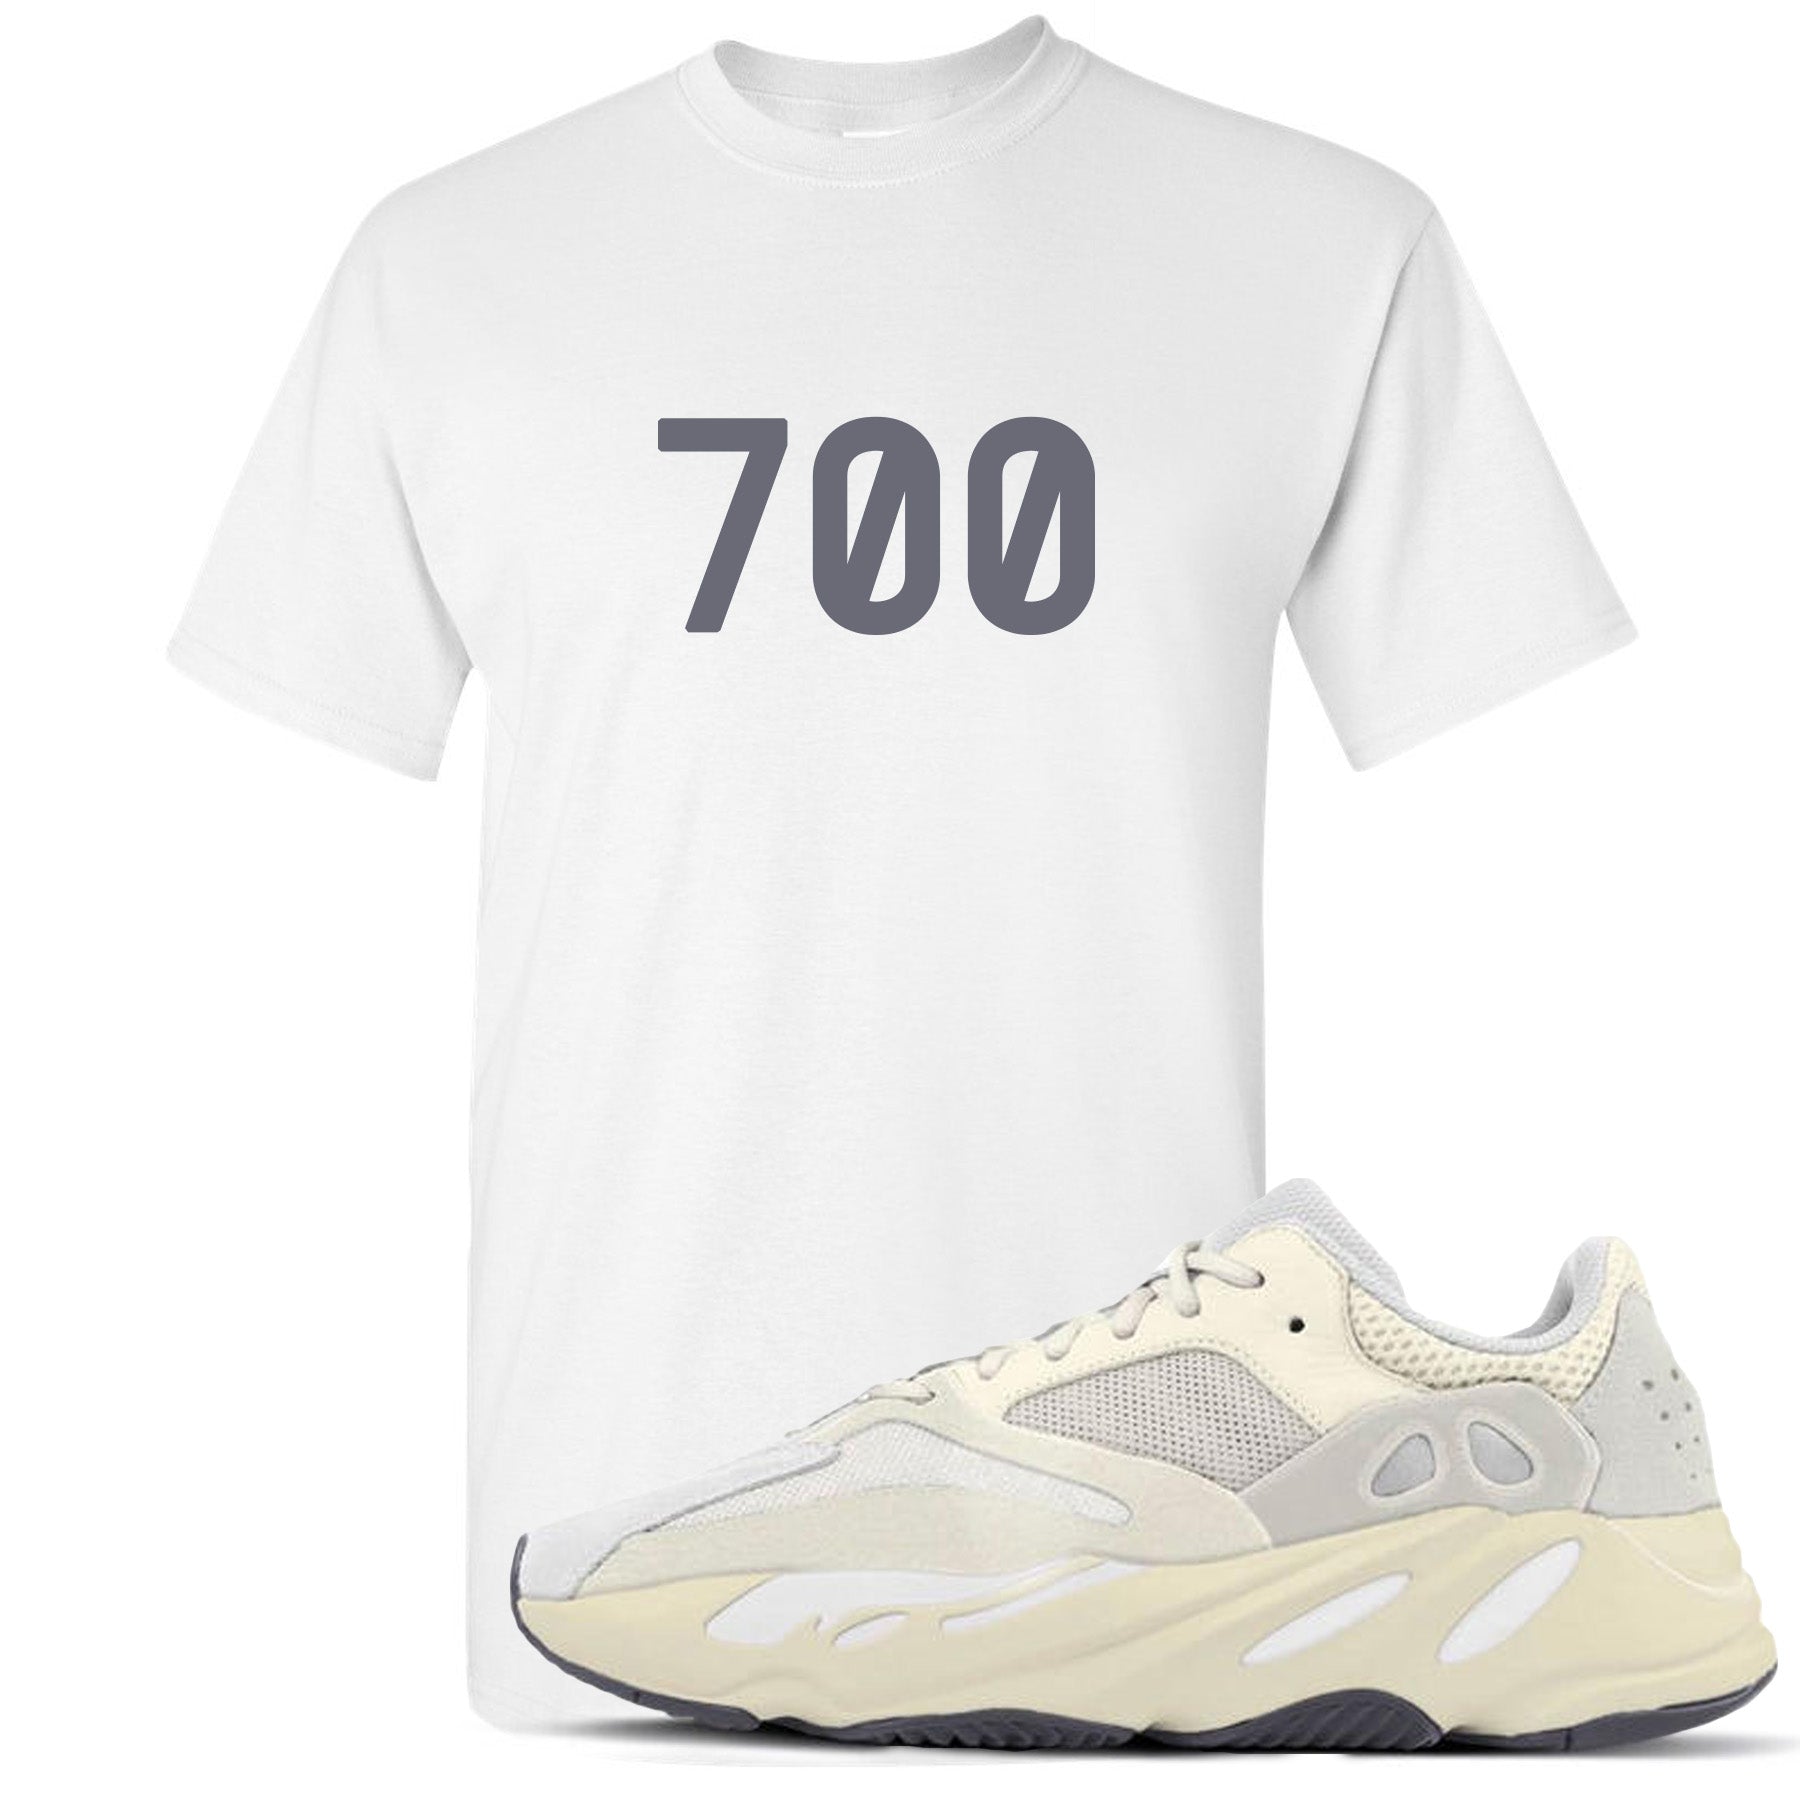 yeezy 700 analog sneakers